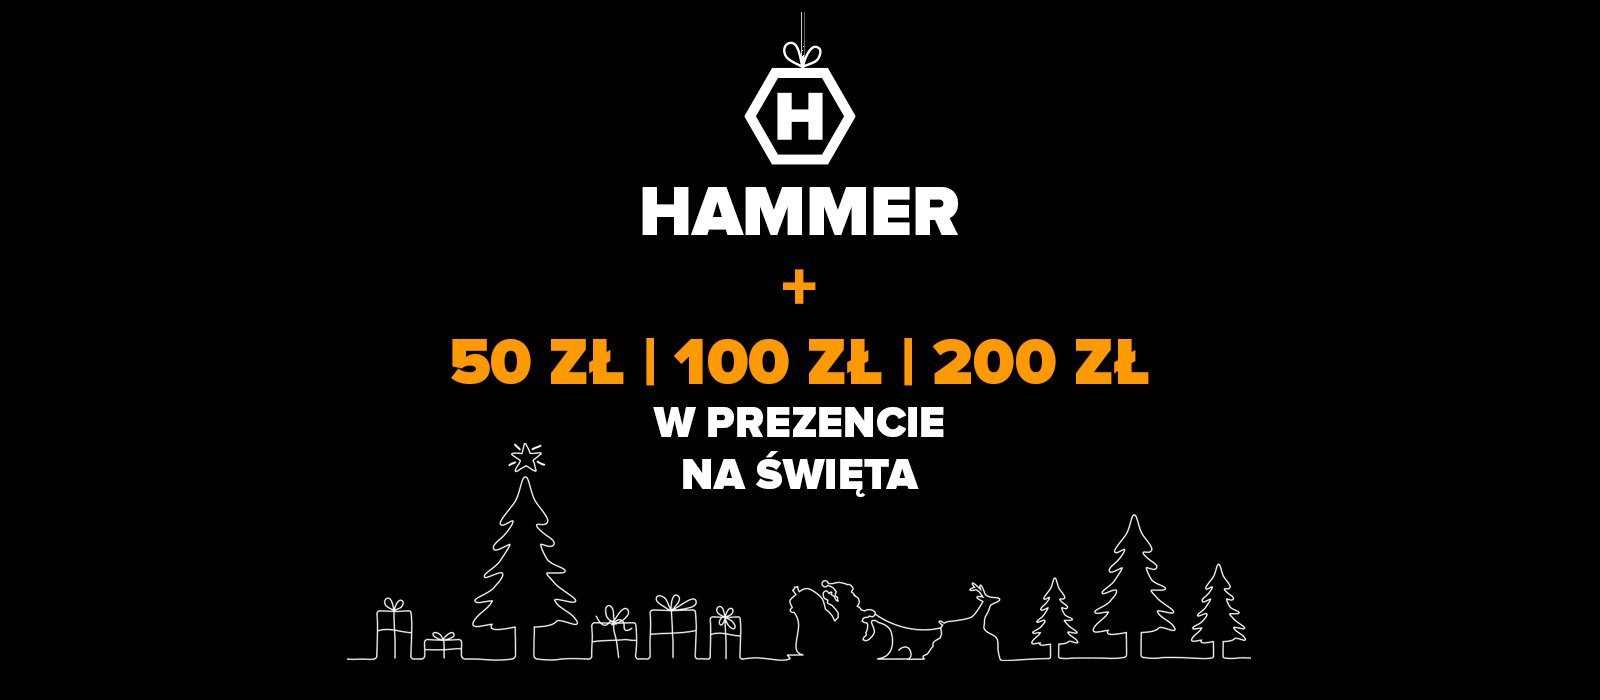 Kaufen Sie ein ausgewähltes HAMMER-Smartphone und Sie erhalten bis zu 200 PLN, die Sie für alles ausgeben können, was Sie wollen 25